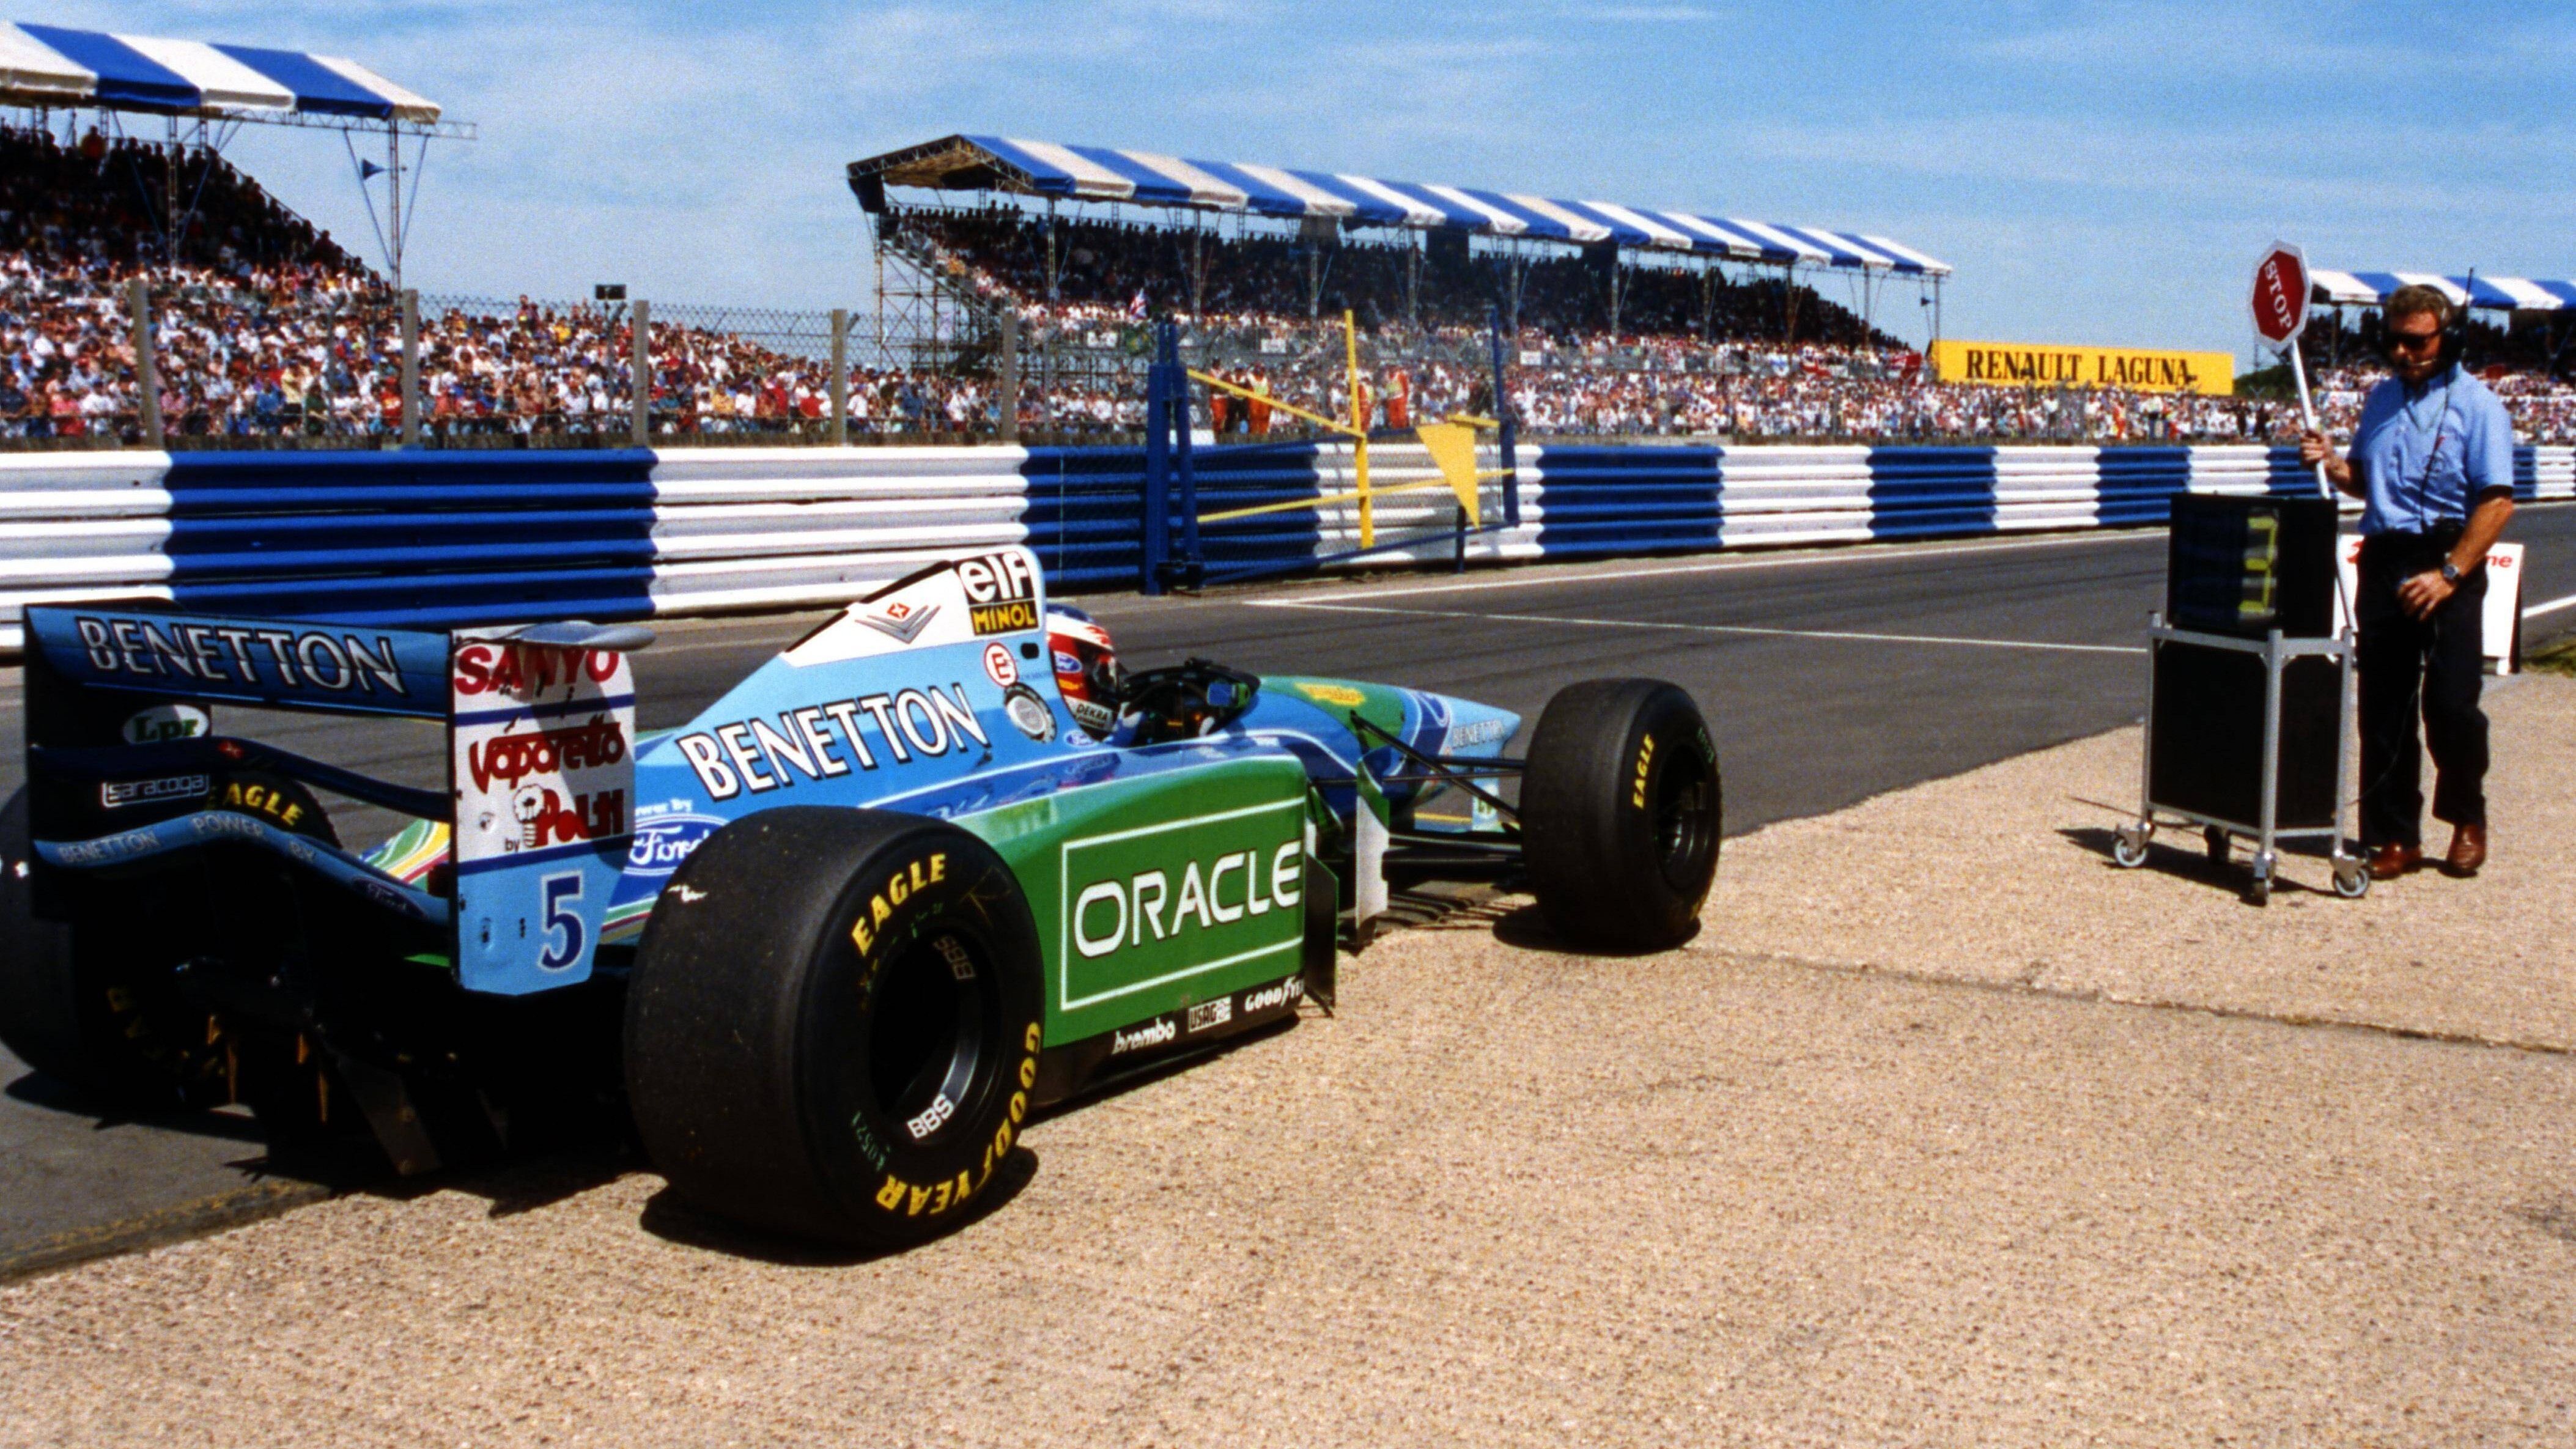 
                <strong>Michael Schumacher wird erstmals F1-Weltmeister</strong><br>
                Im Jahr 1994 gewann Michael Schumacher seinen ersten von sieben WM-Titeln in der Formel 1. In der Saison, die von Betrugsvorwürfen und dem Tod von Ayrton Senna überschattet wurde, dominierte der Kerpener mit acht Siegen und rettete trotz zweier Disqualifikationen und einer Sperre für zwei Rennen den Vorsprung von einem Punkt vor seinem Williams-Widersacher Damon Hill über die Ziellinie.
              